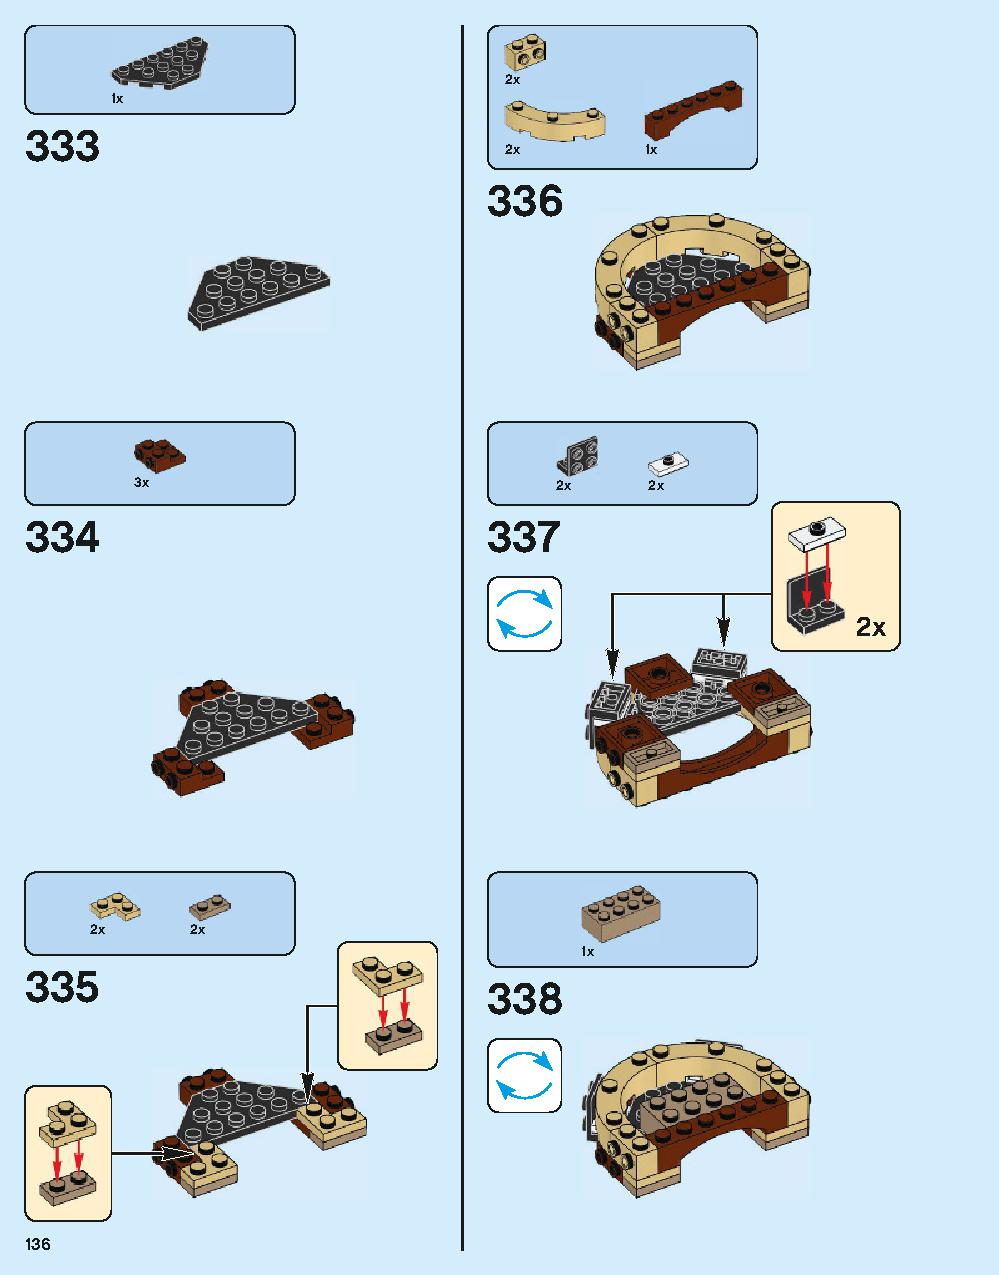 ホグワーツ城 71043 レゴの商品情報 レゴの説明書・組立方法 136 page